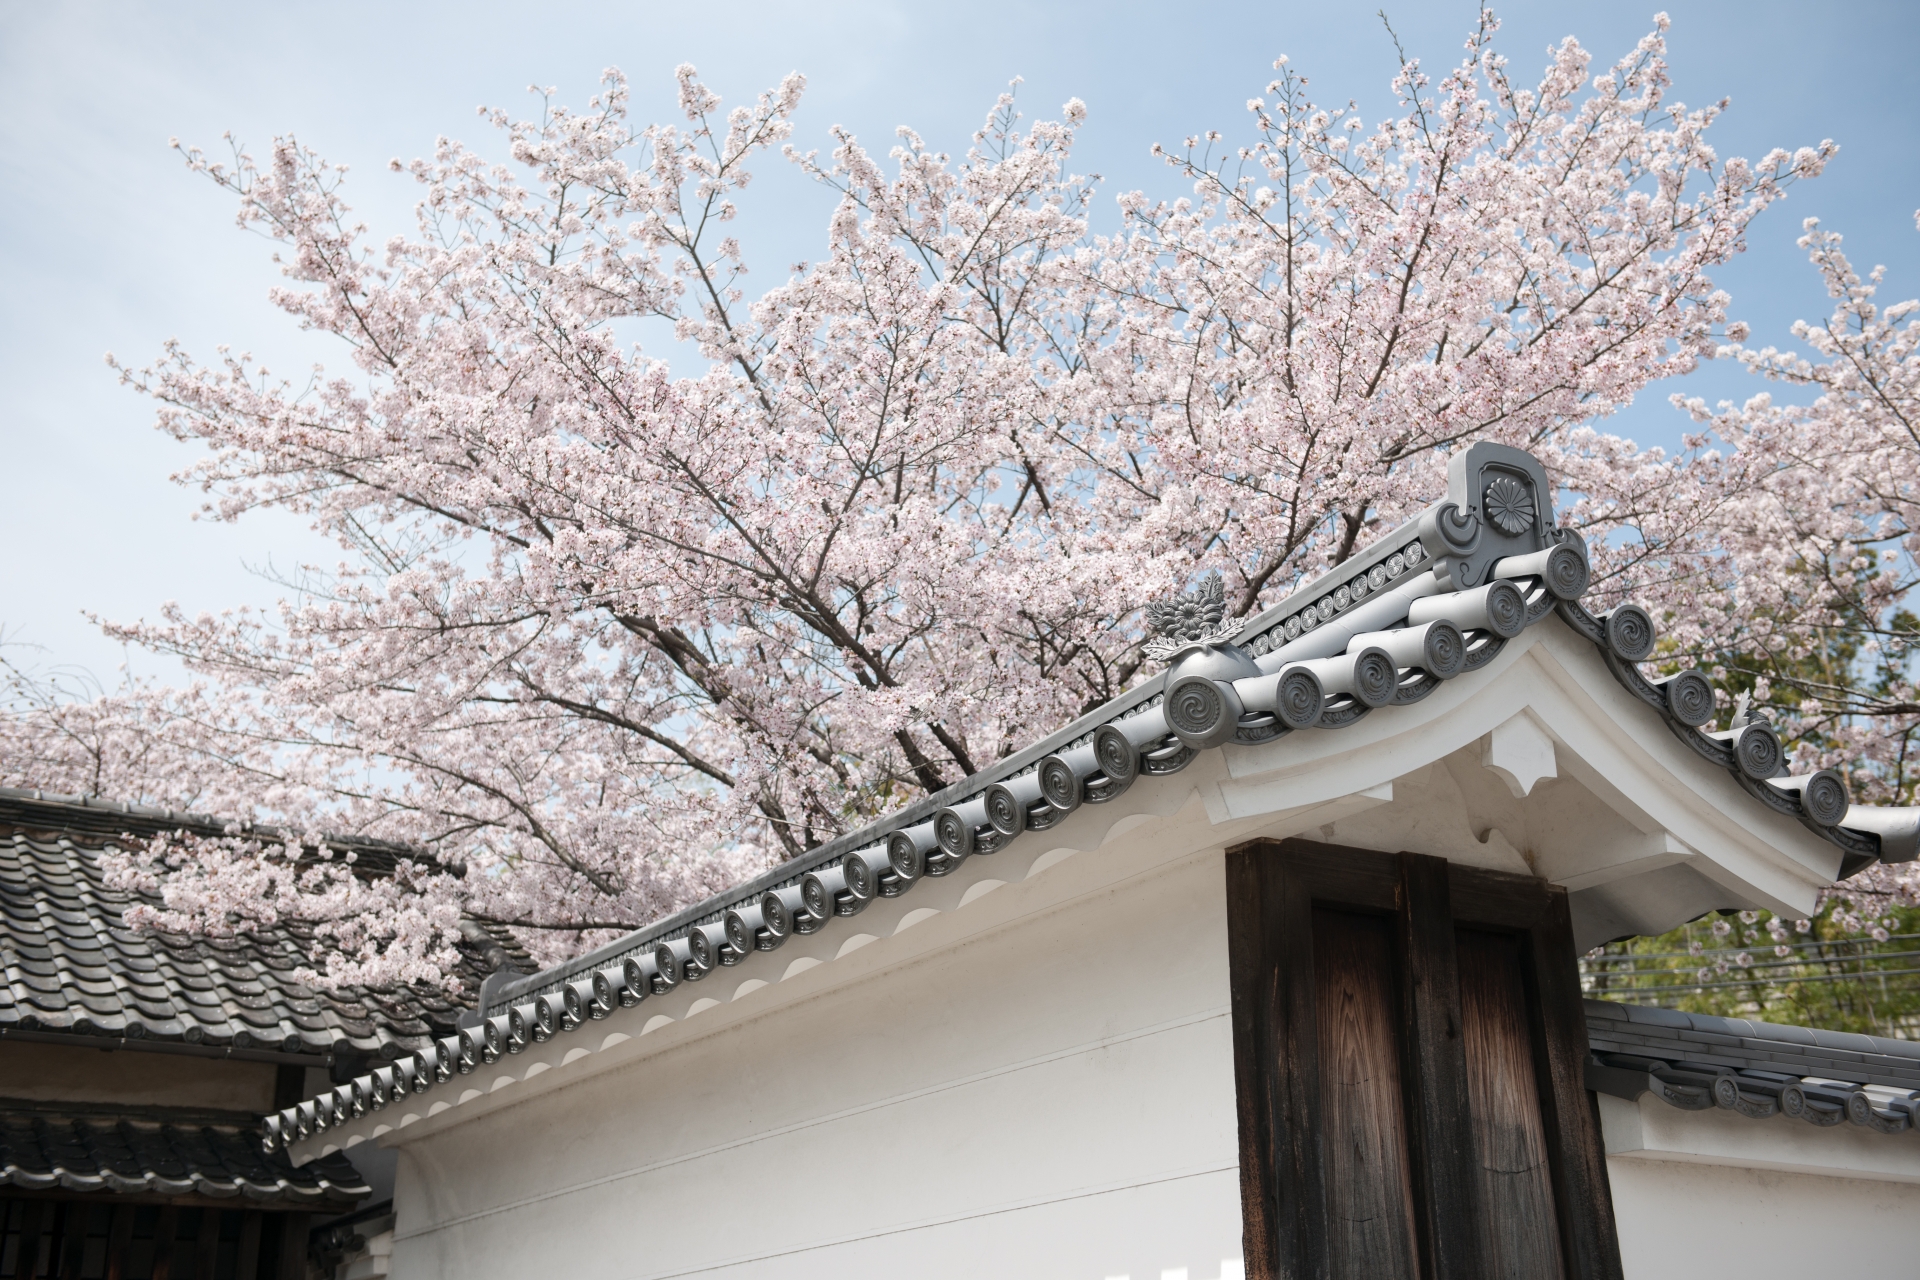 京都市山科区にある勧修寺 かじゅうじ は桜の名所としても知られており 05年の そうだ 京都 行こう のポスターに勧修寺の桜風景が選ばれました 職人 Comブログ